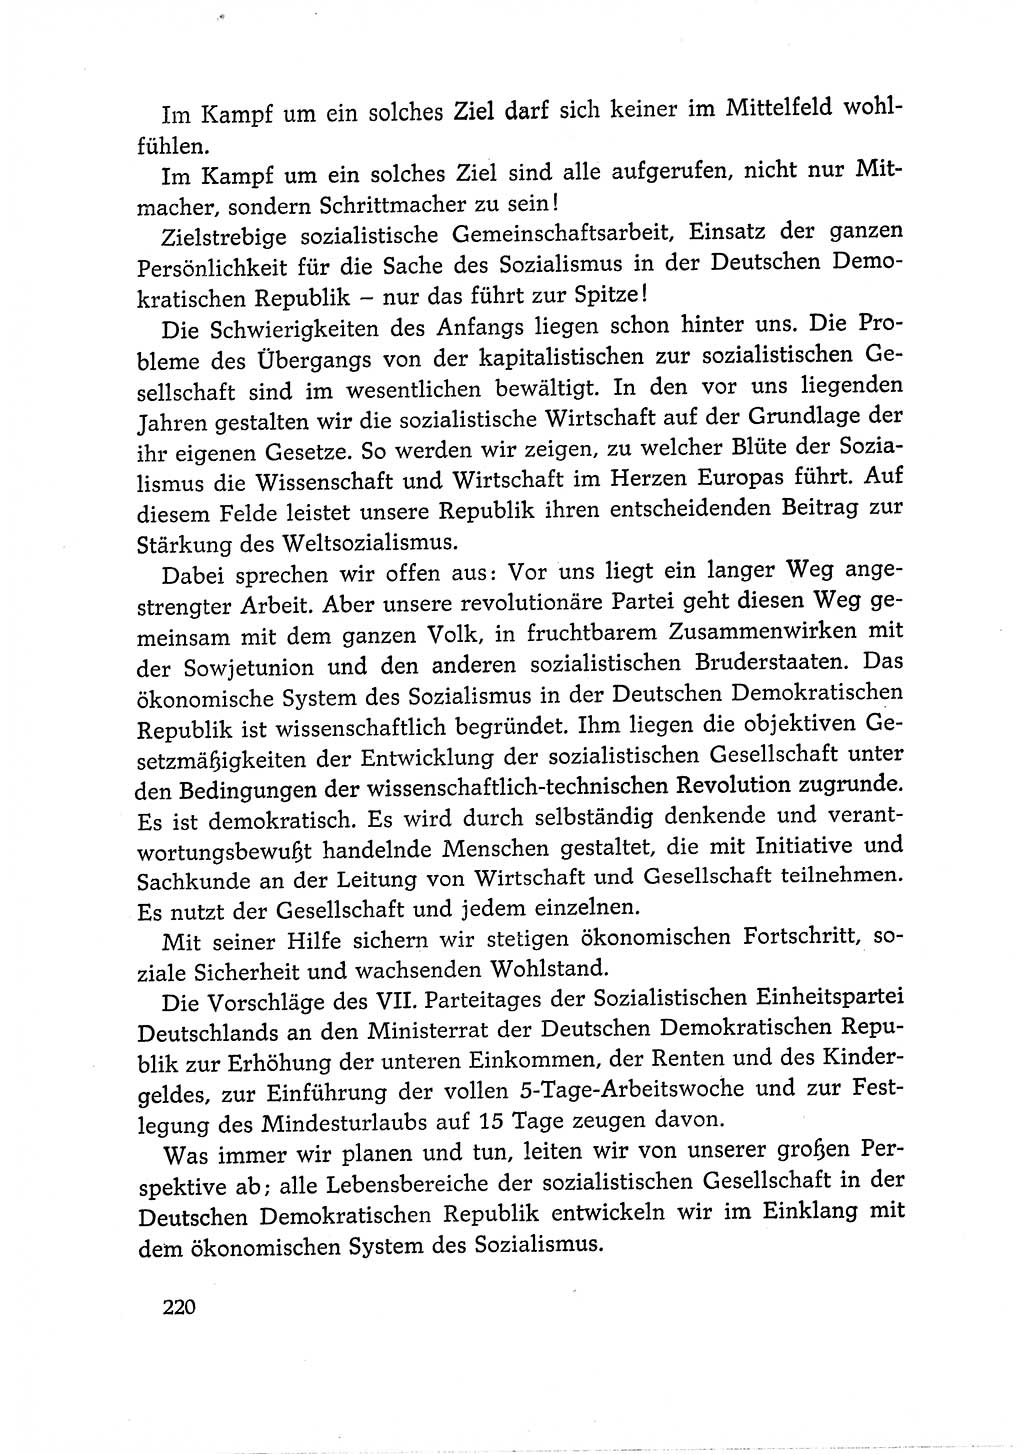 Dokumente der Sozialistischen Einheitspartei Deutschlands (SED) [Deutsche Demokratische Republik (DDR)] 1966-1967, Seite 220 (Dok. SED DDR 1966-1967, S. 220)